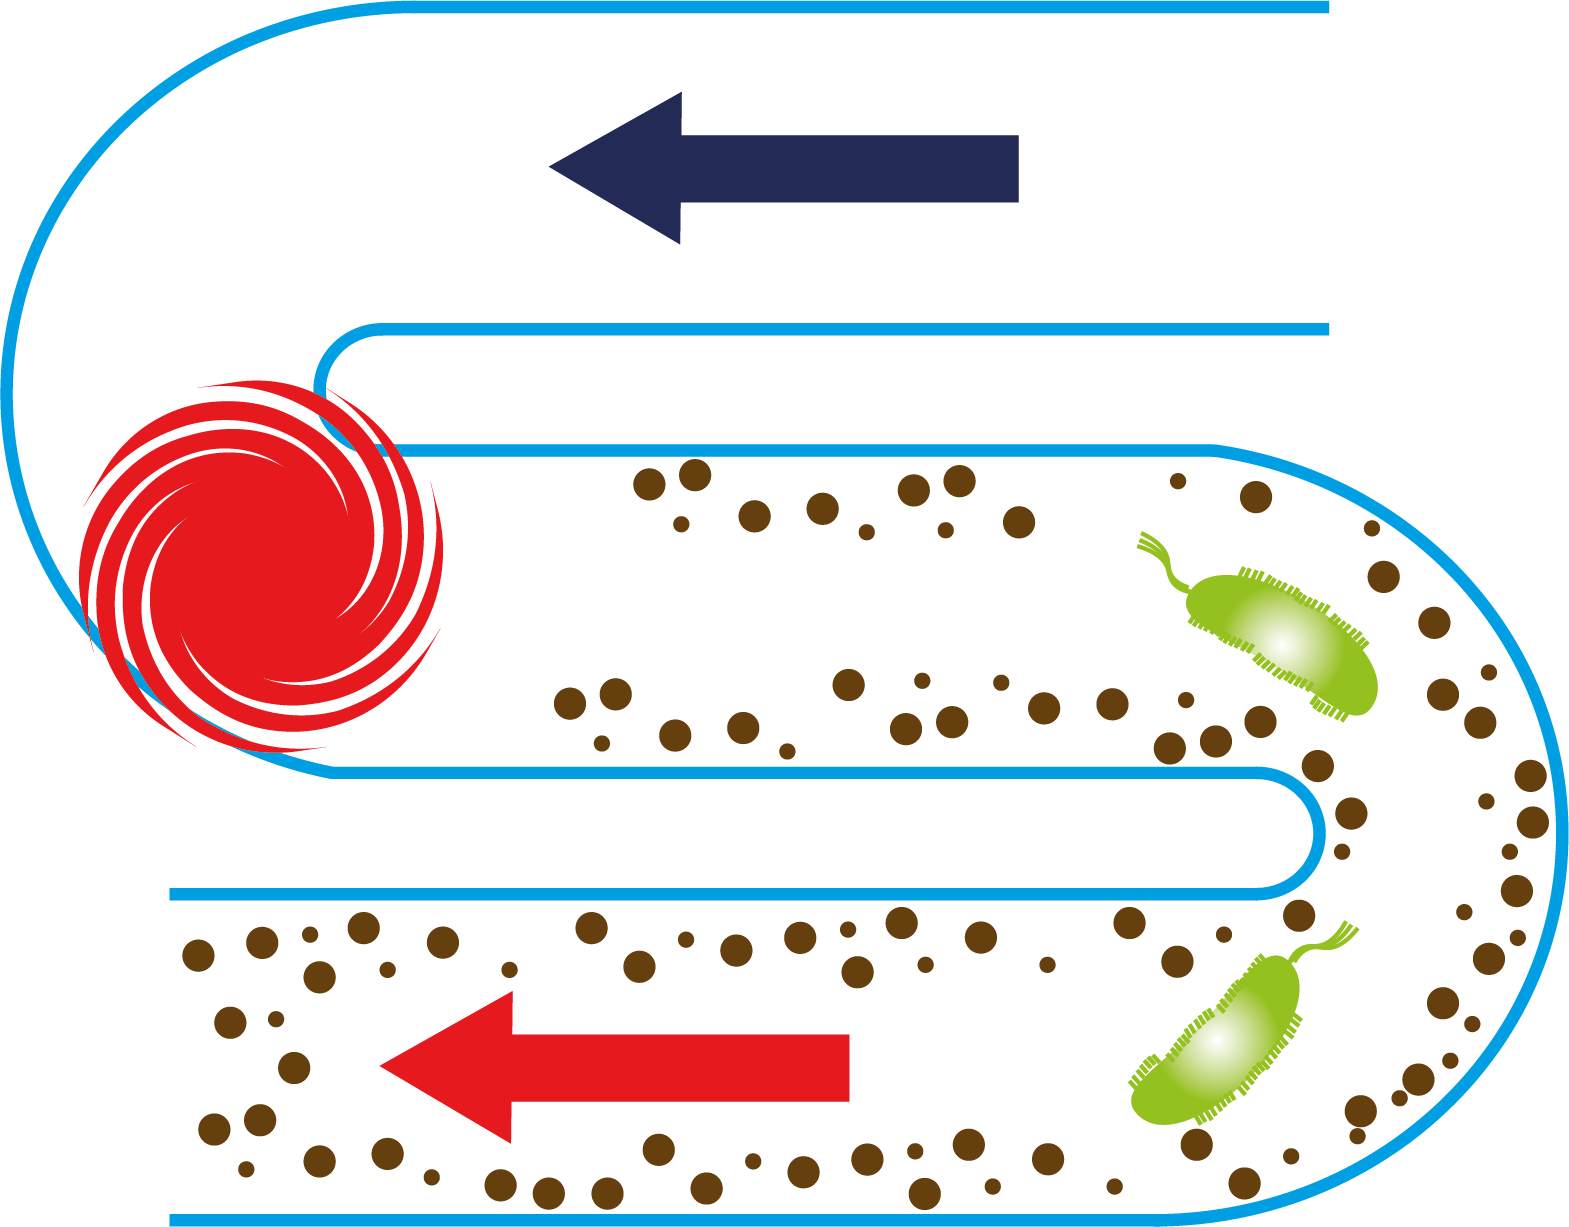 Schéma de développement de biofilm dans les canalisations